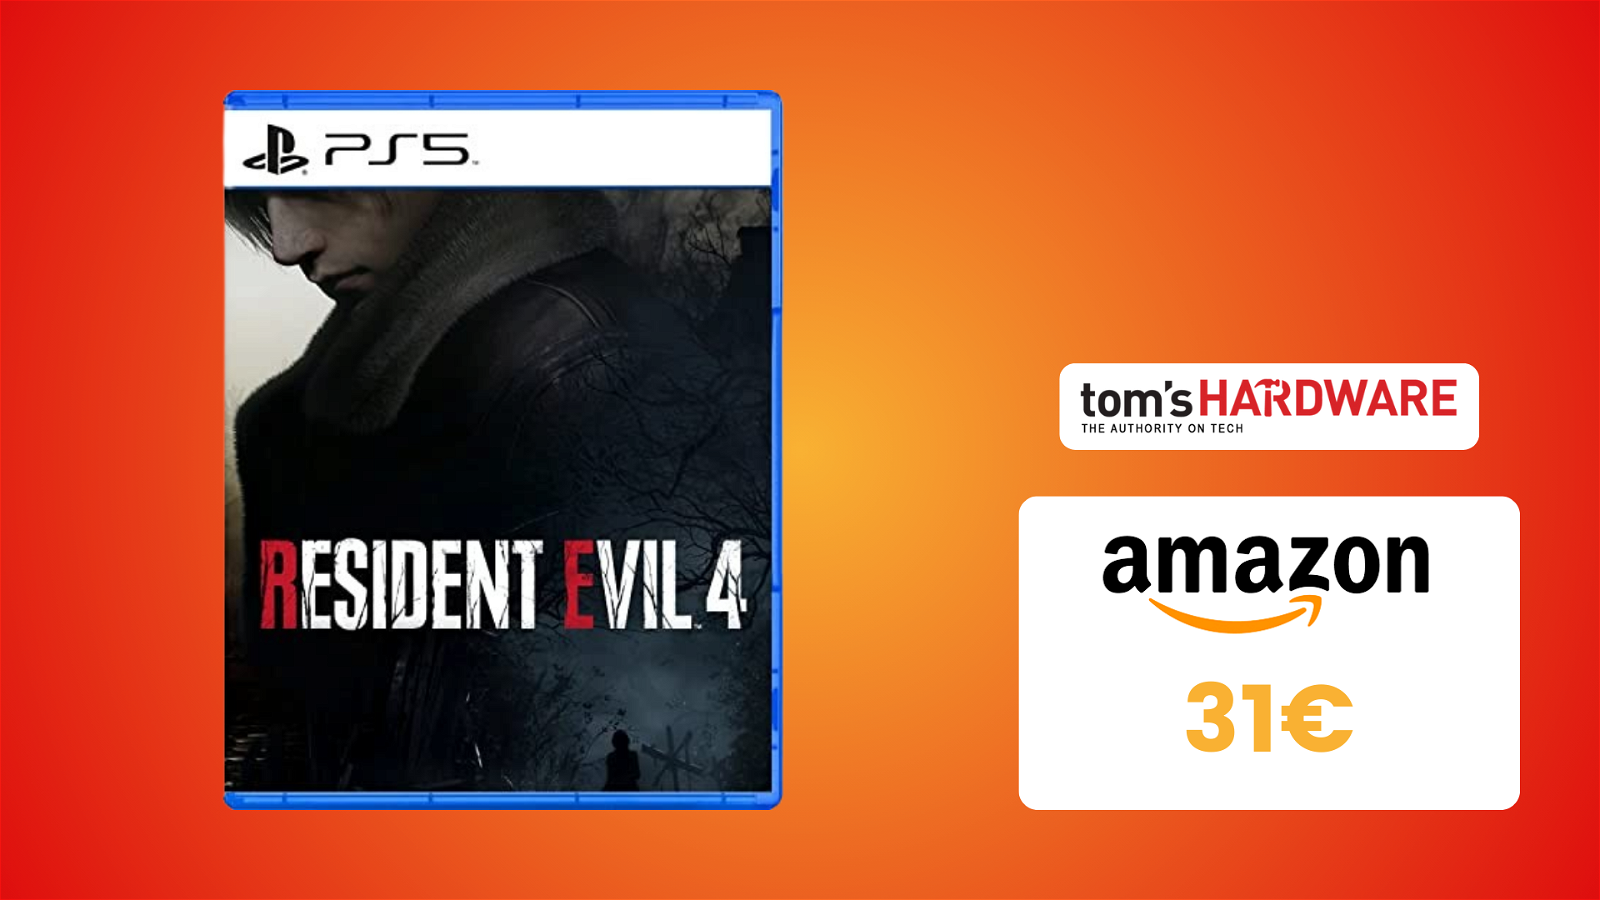 Immagine di Il capolavoro Resident Evil 4 per PS5 è in SCONTO a soli 31€!